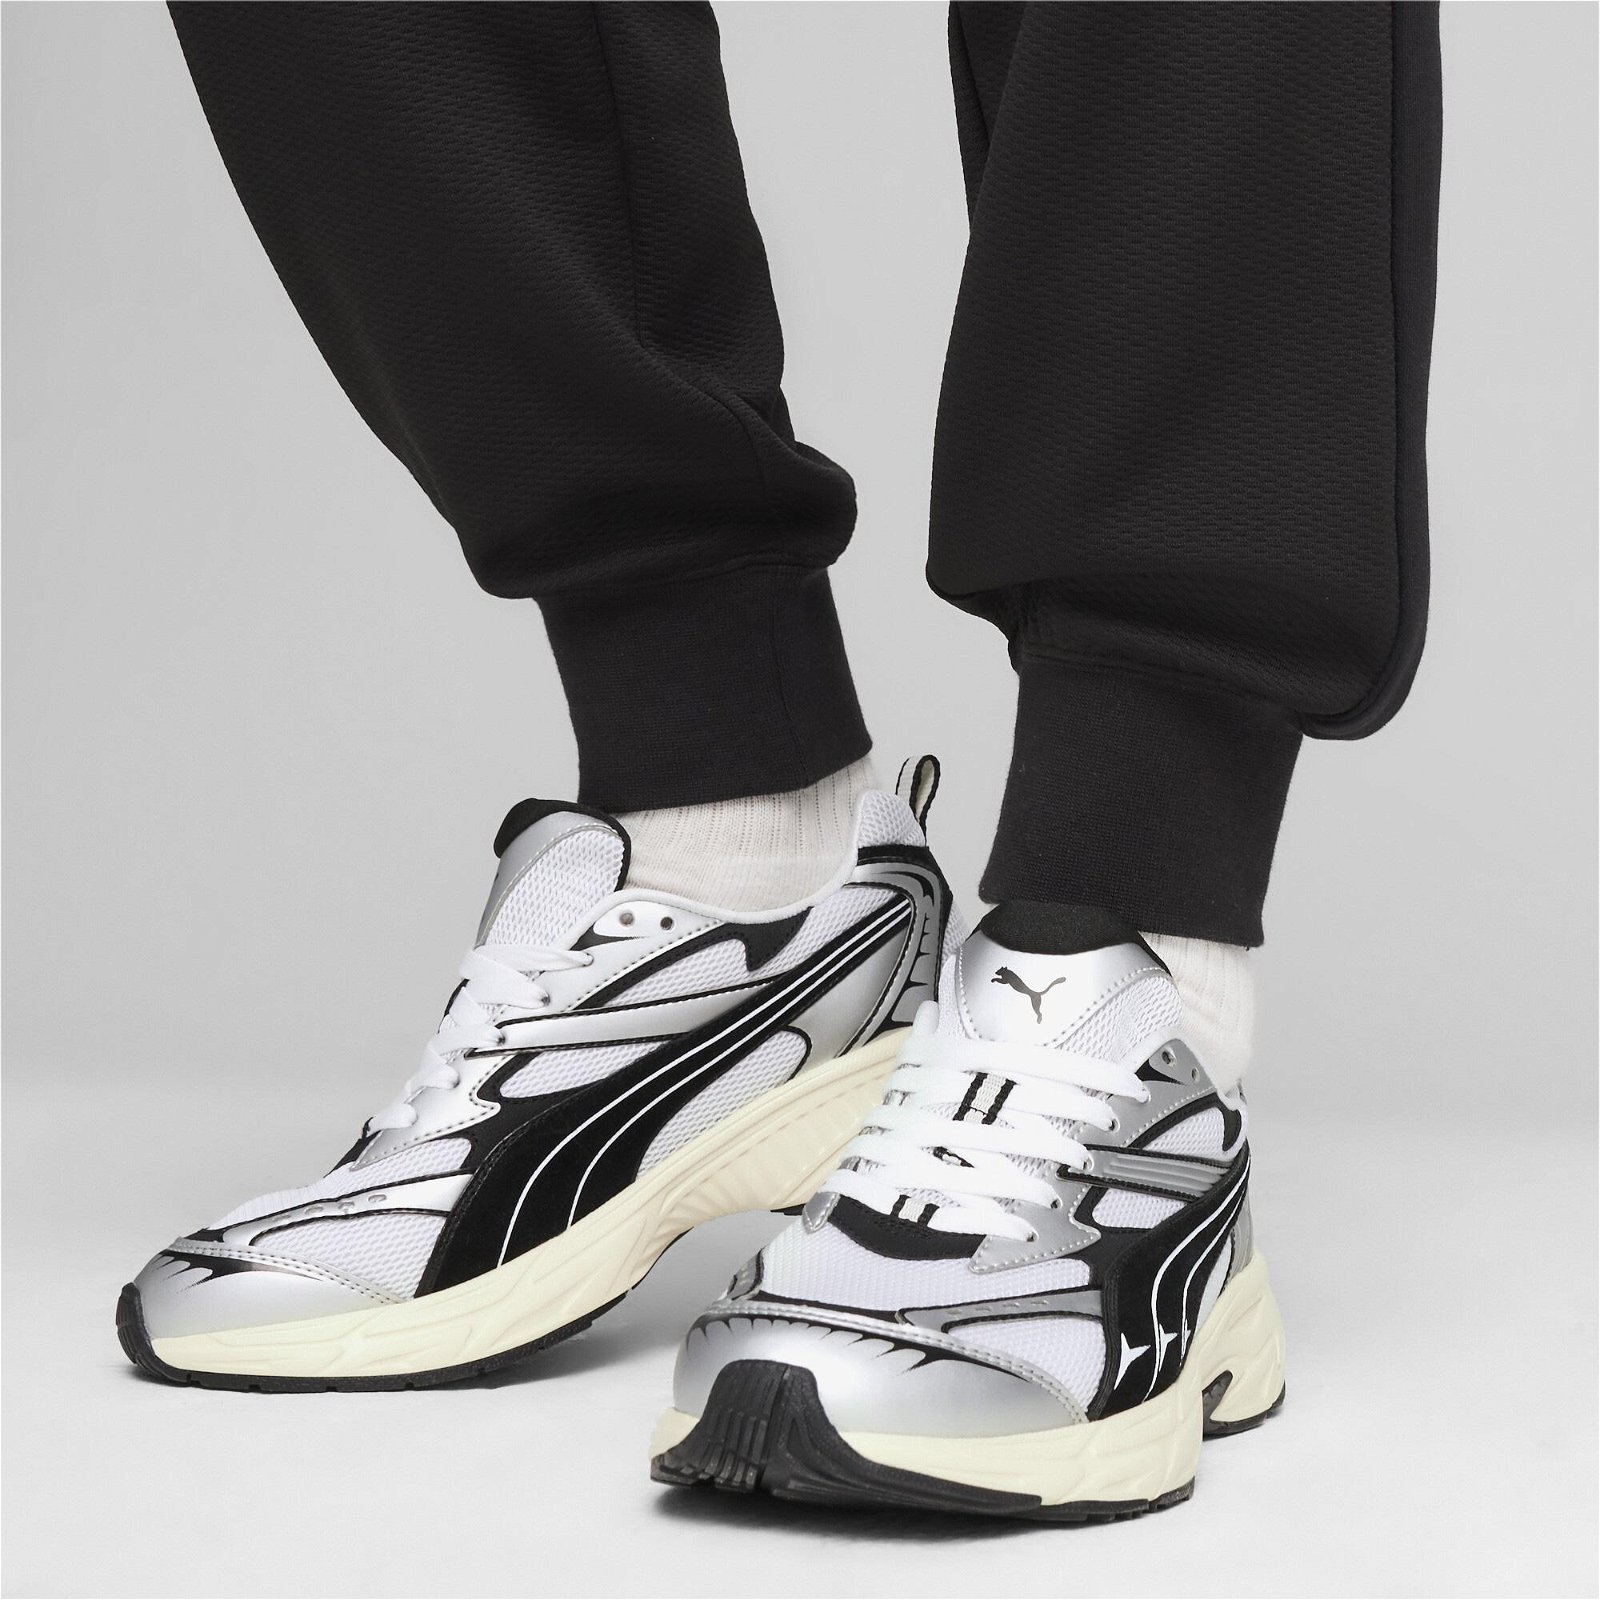 Puma Morphic Retro Unisex Siyah/Beyaz Spor Ayakkabı